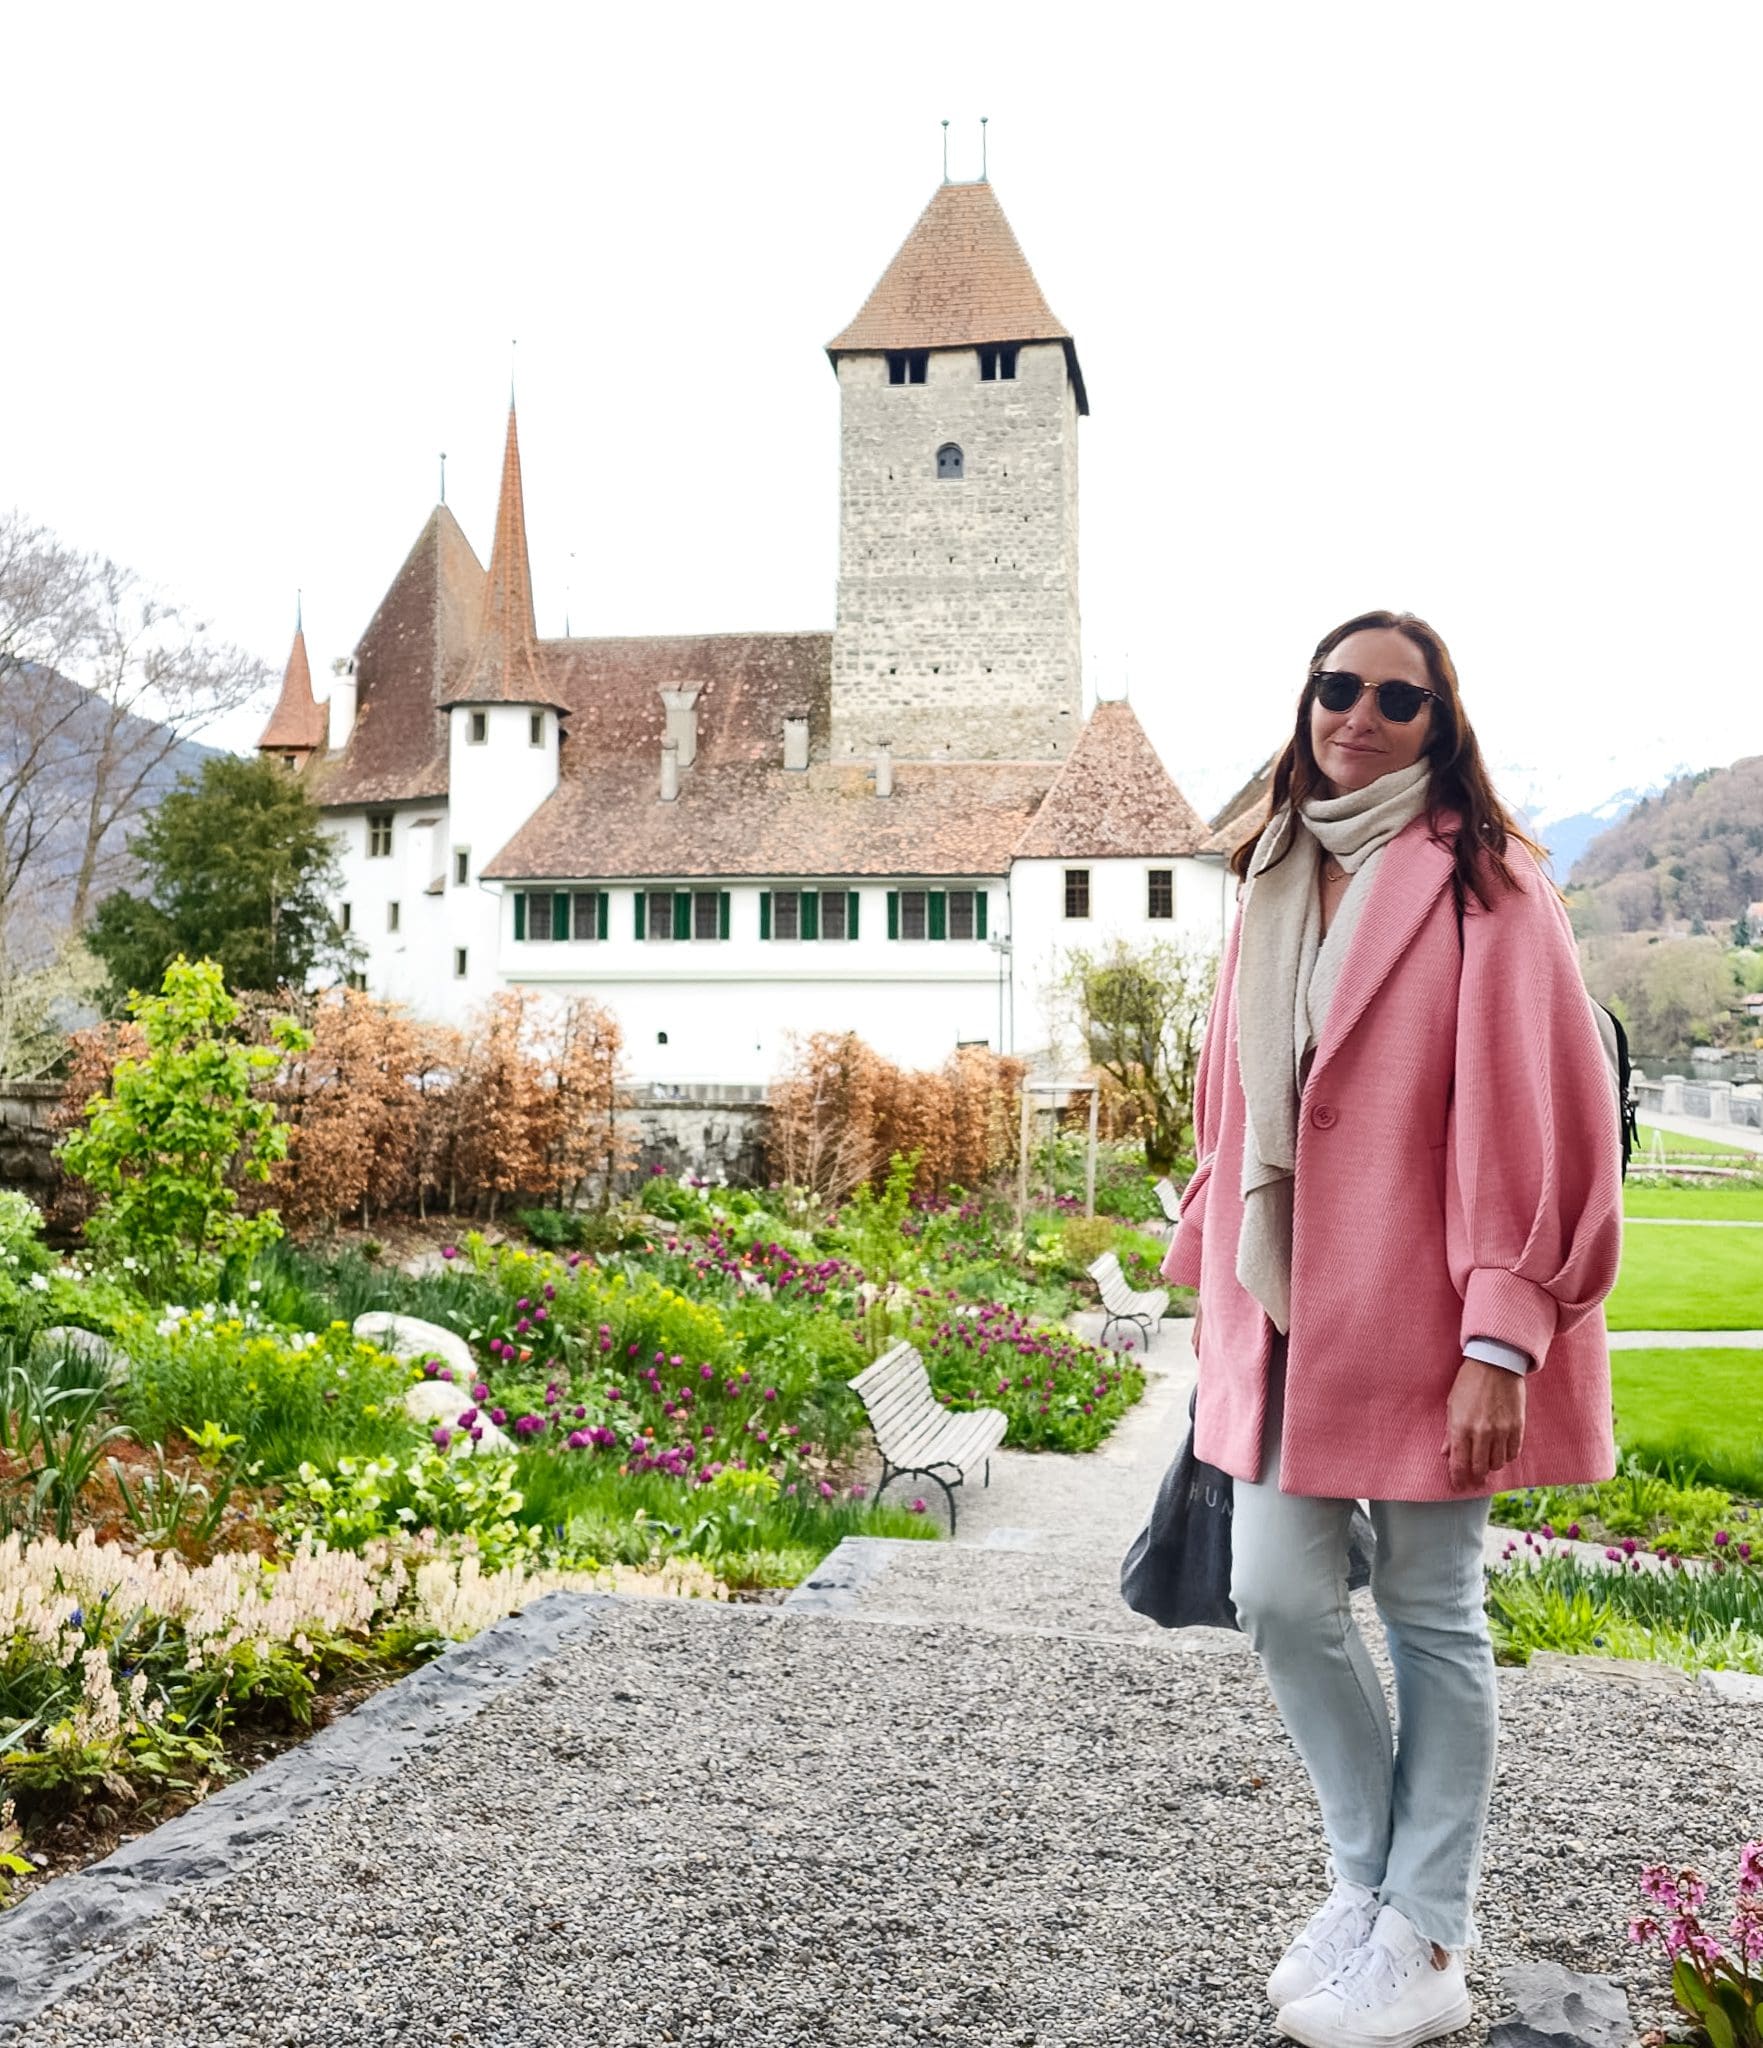 Spiez Castle on Thun Lake Interlaken